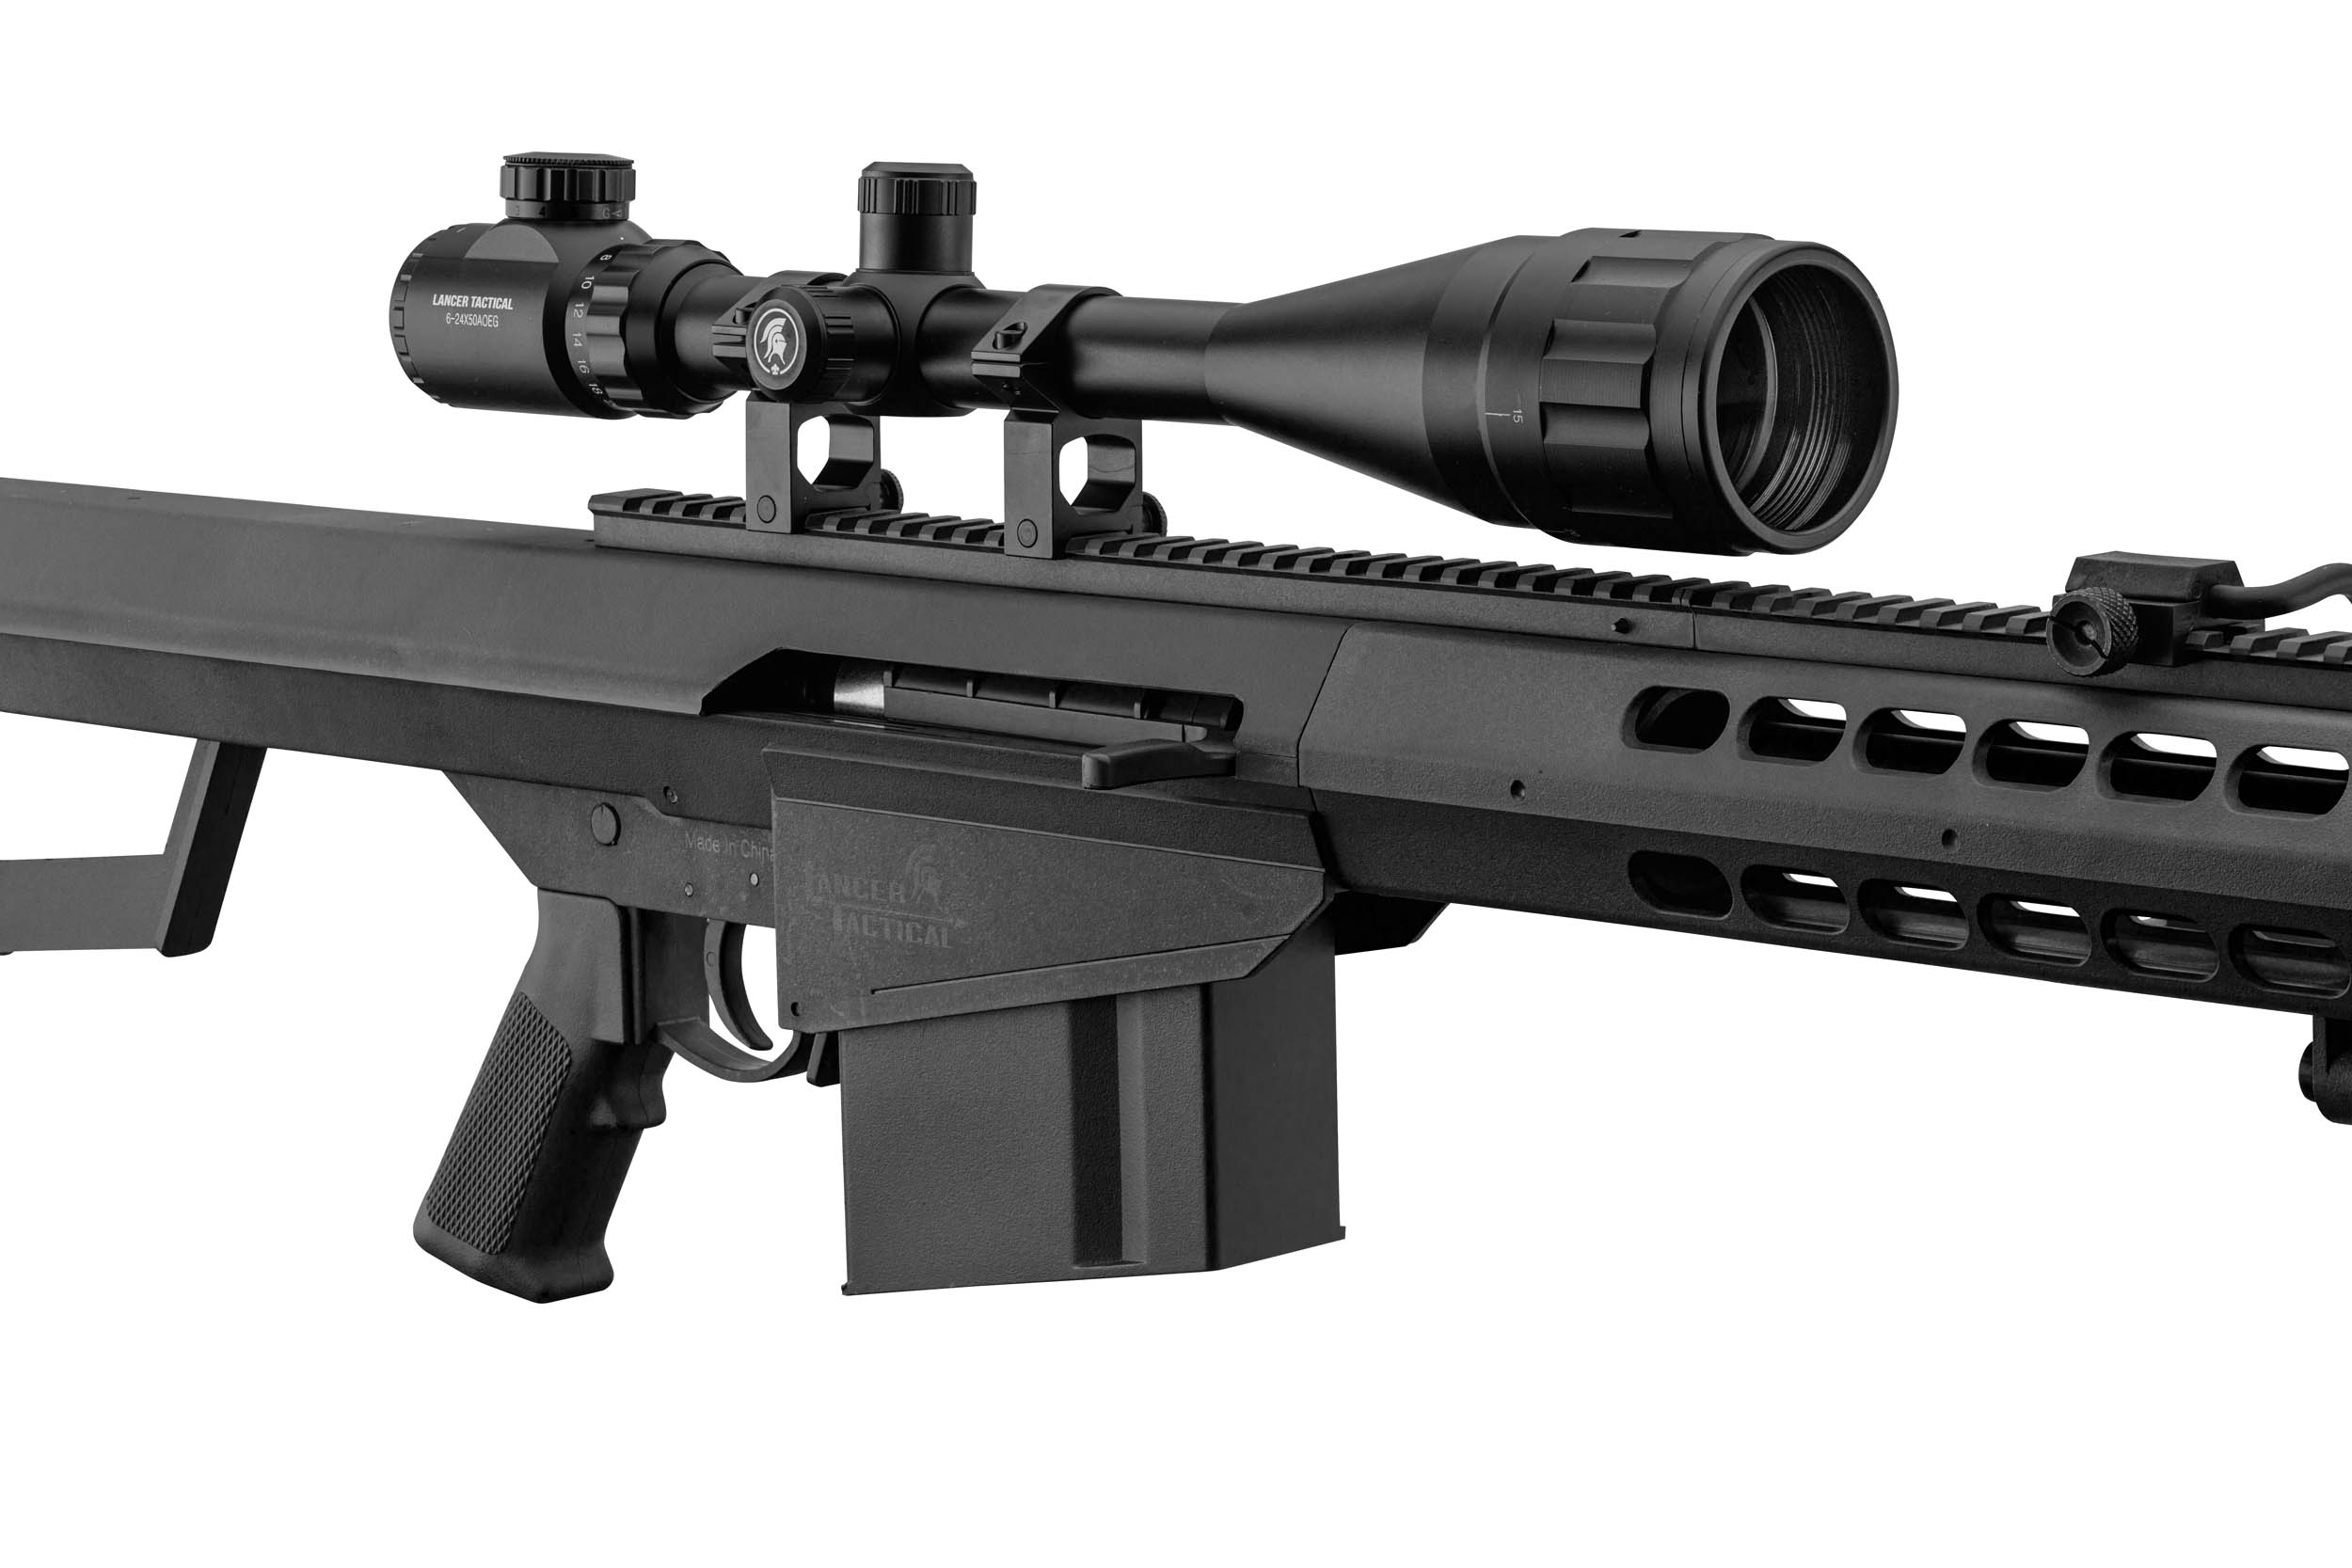 PCKLR3050-06 Pack Sniper LT-20 noir M82 1,5J + lunette + bi-pied + poignée